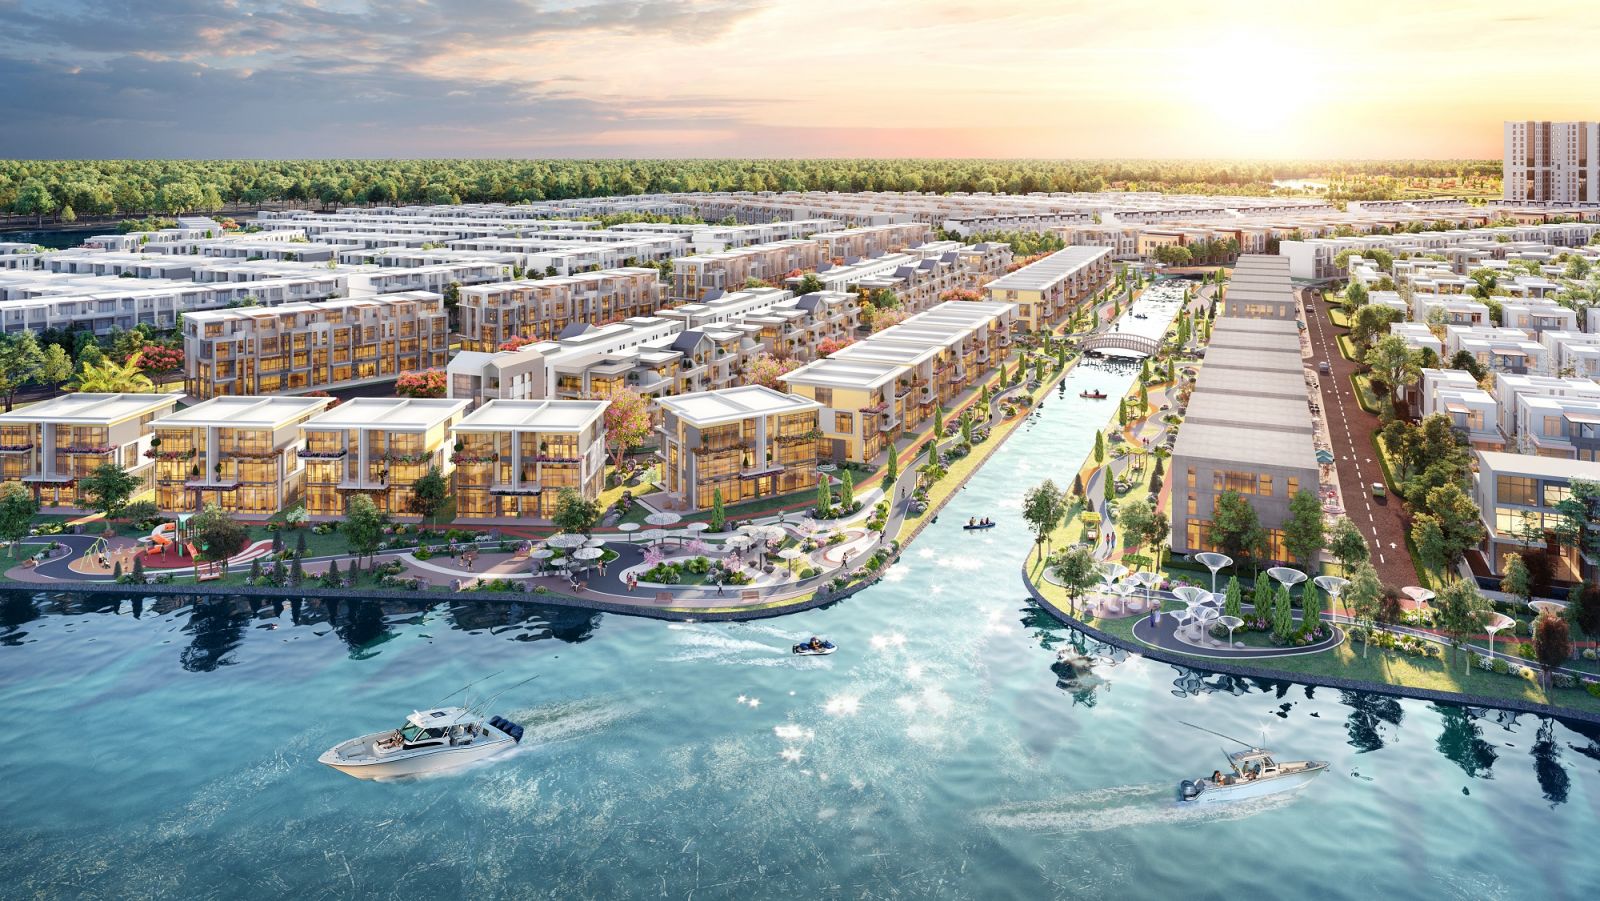 Khu đô thị sinh thái thông minh Aqua City quy mô 1.000ha, được quy hoạch hoàn chỉnh tiện ích ngay tại phía Đông TPHCM.